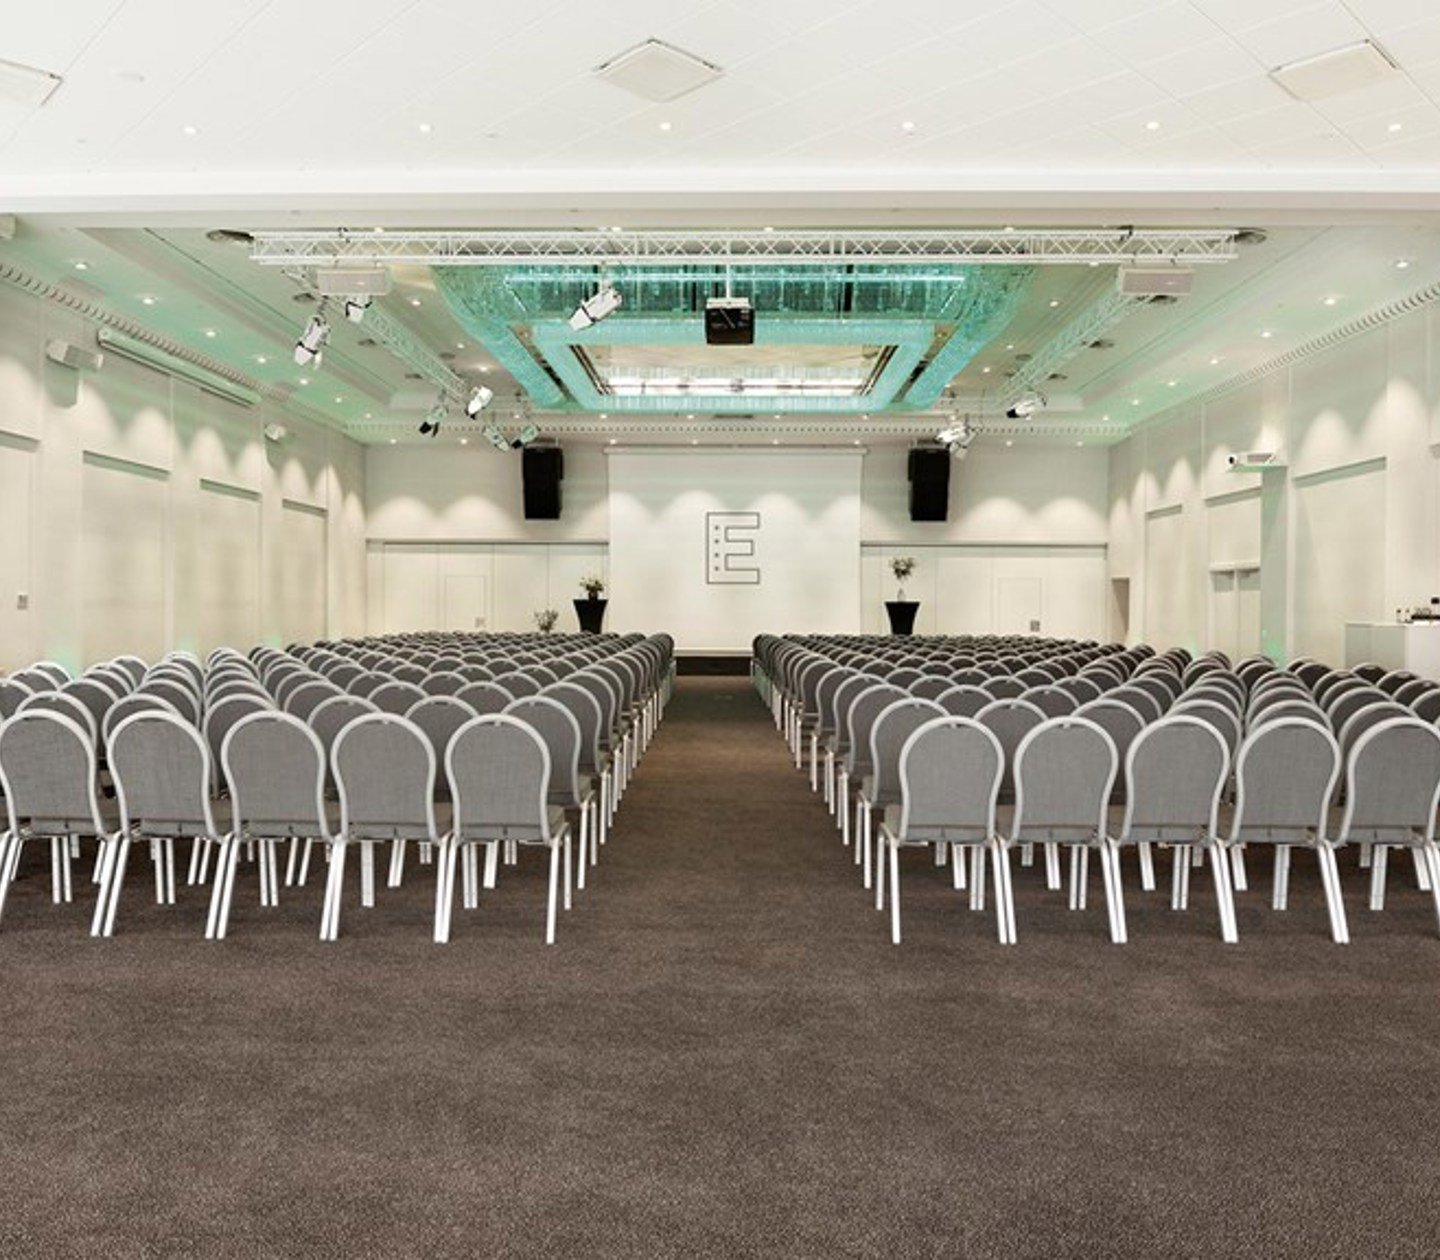 Konferensrum med med många stolar